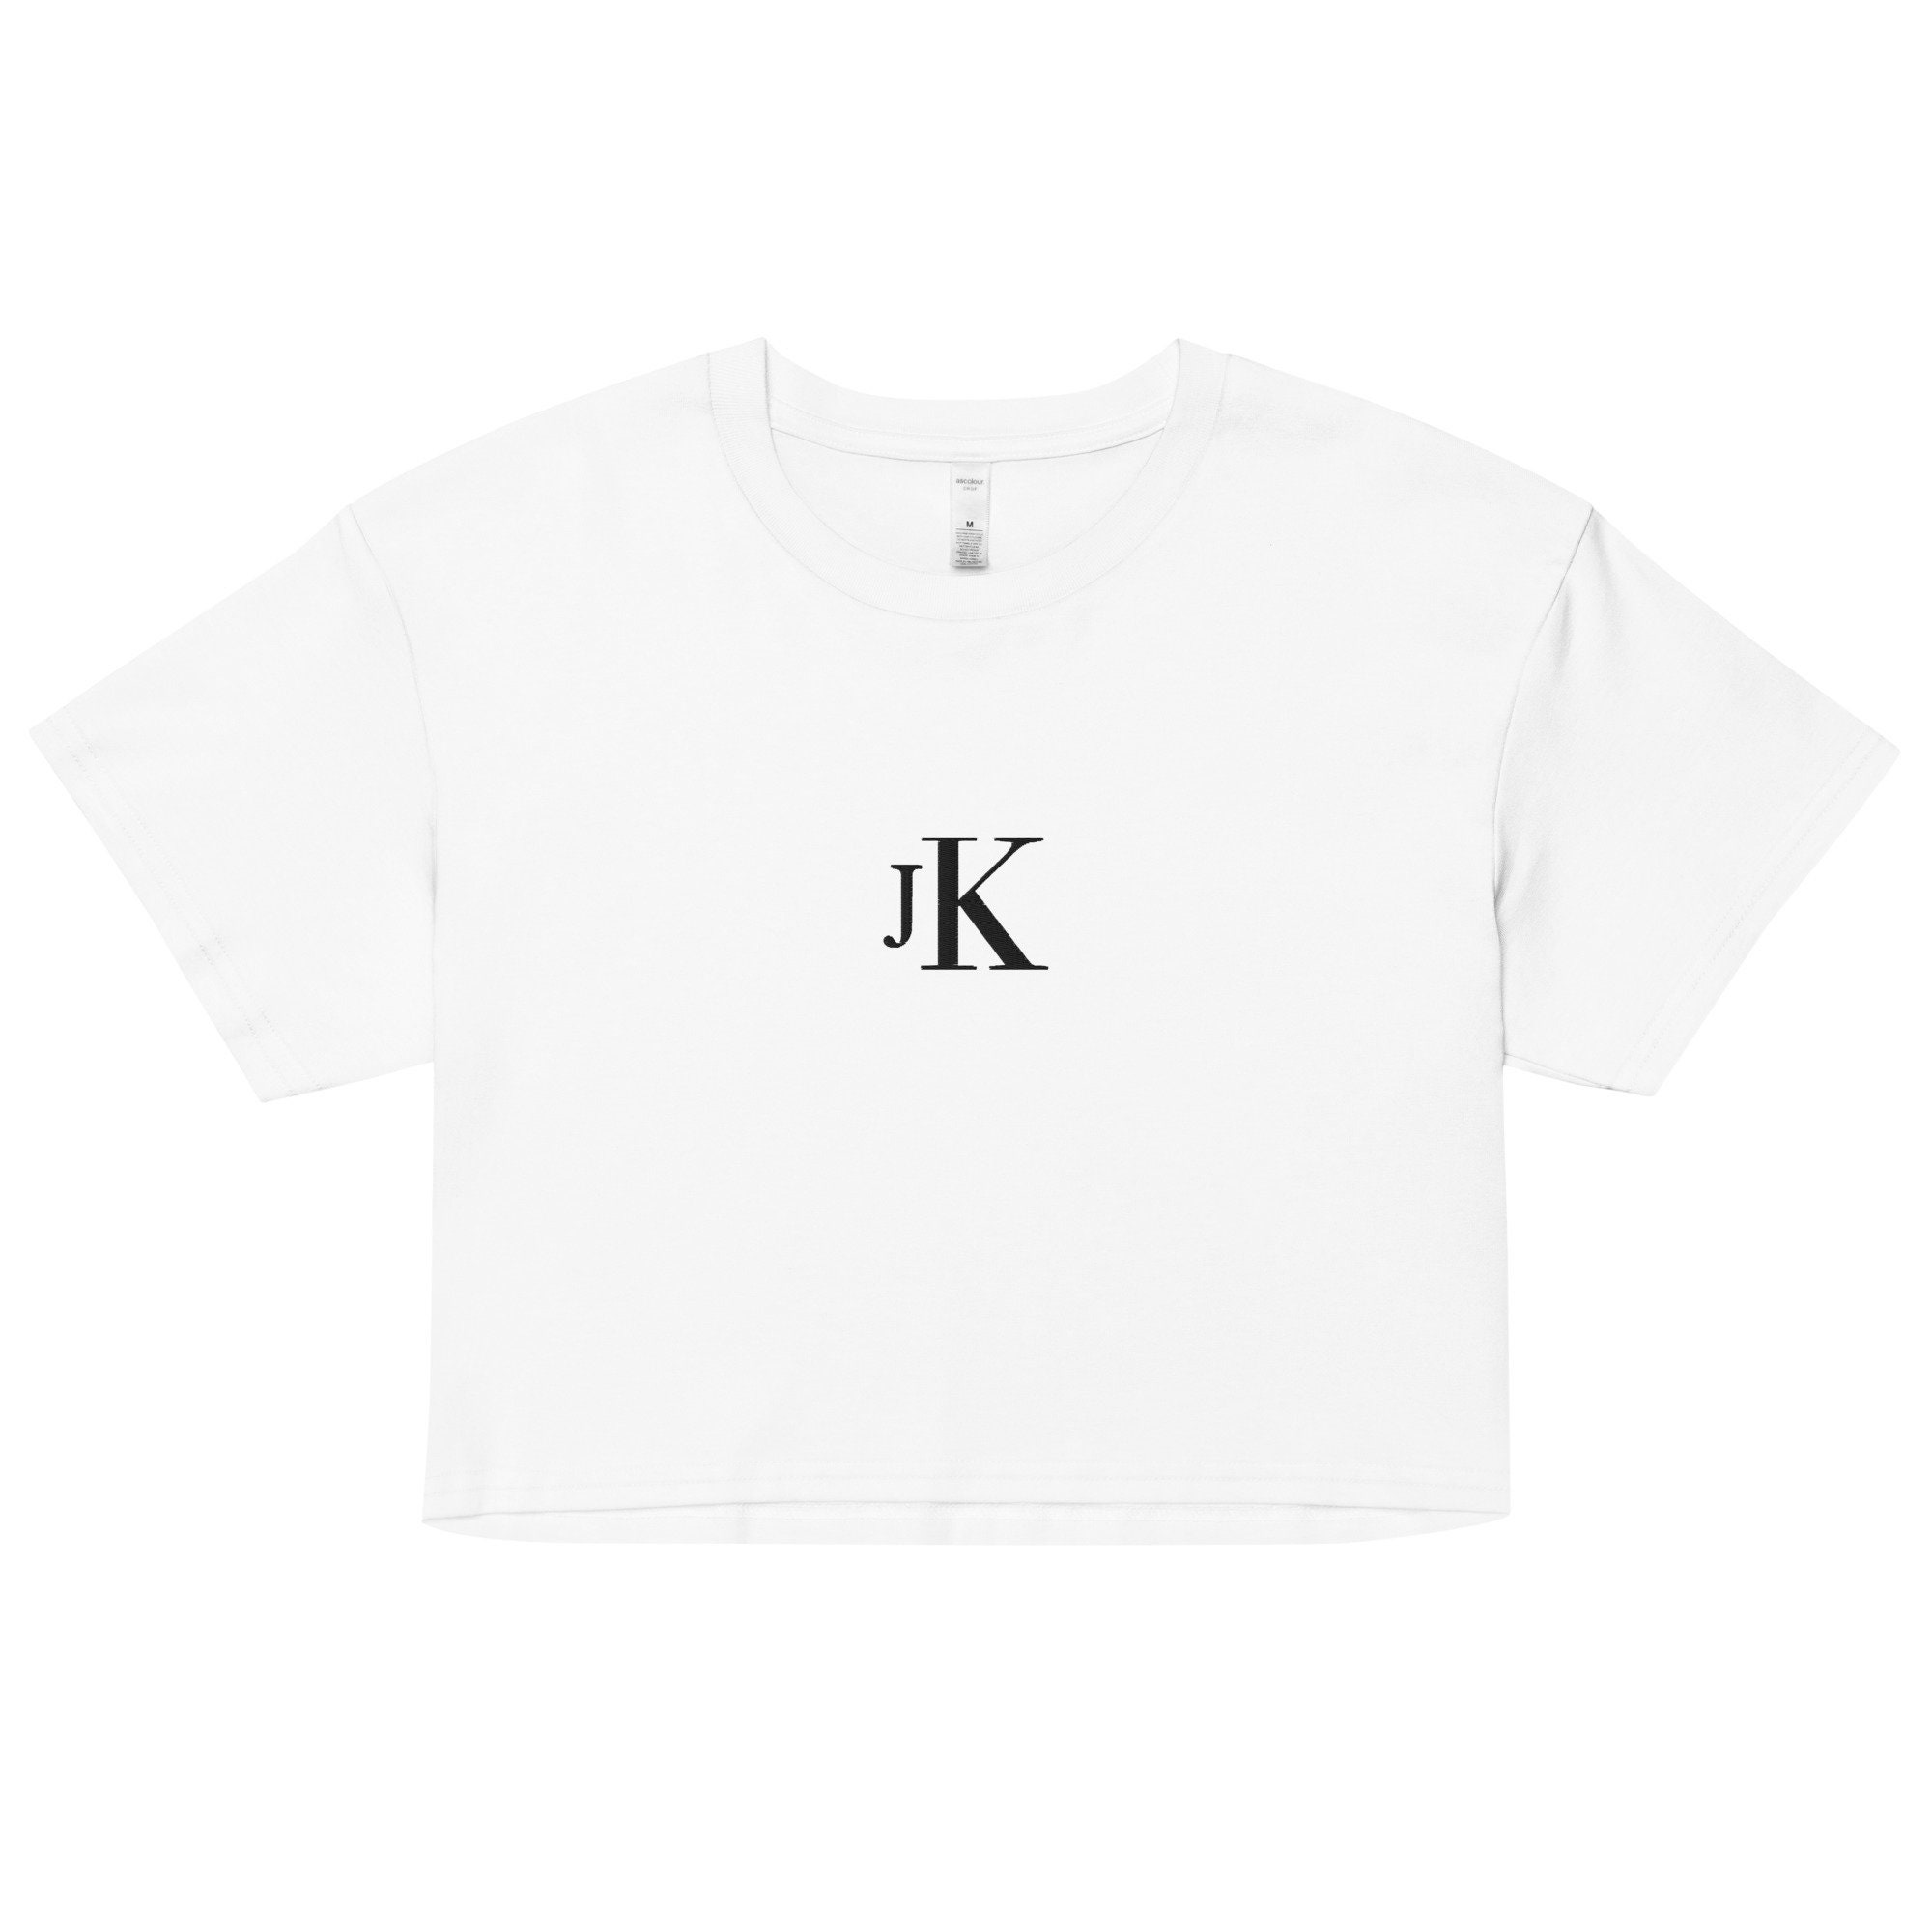 Jk Kids & Babies' Clothes for Sale